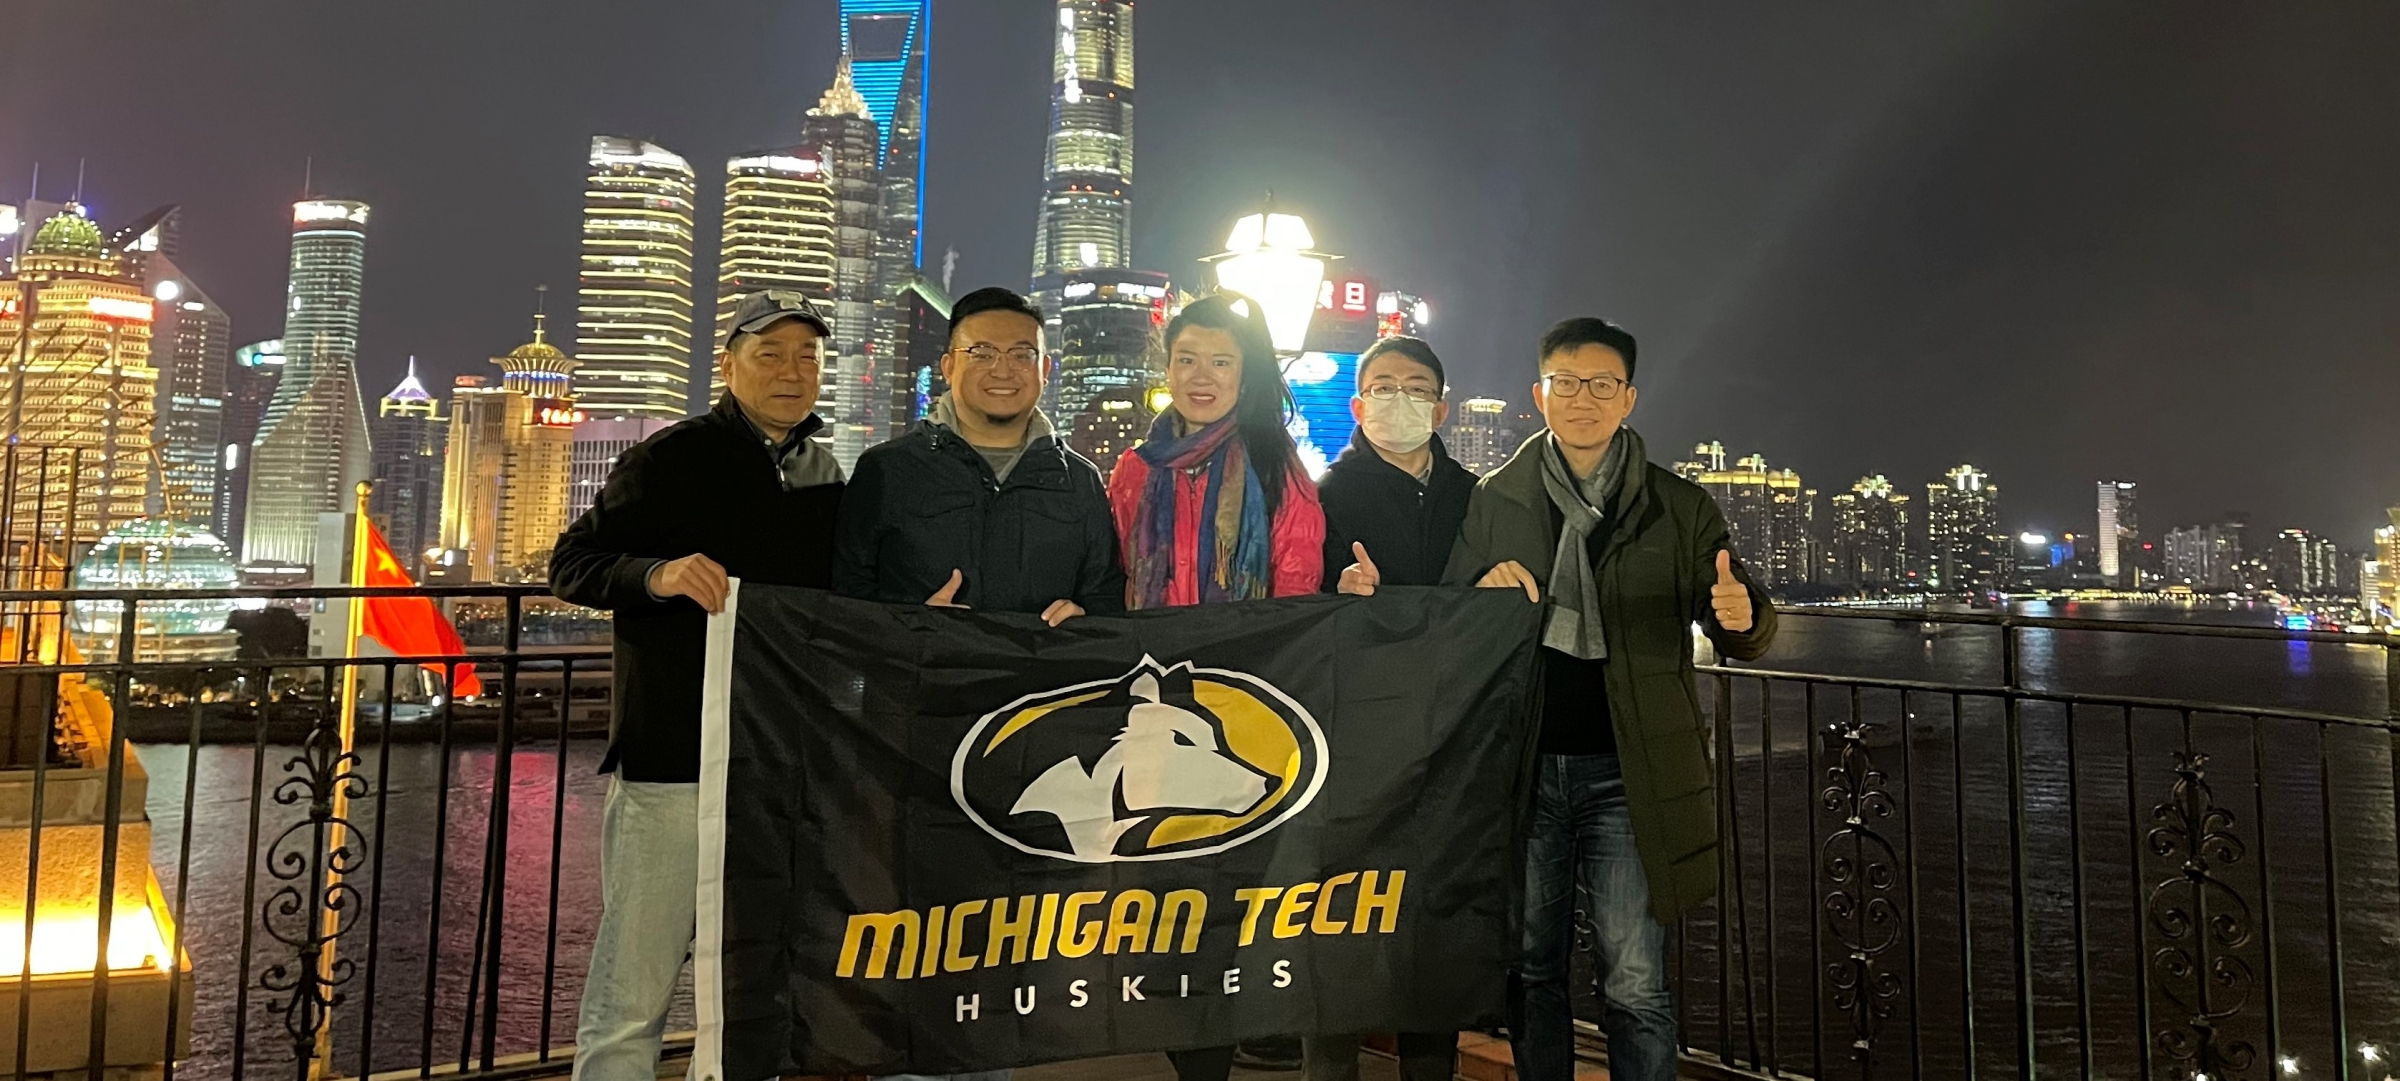 Michigan Tech alumni holding an MTU Husky banner in China.